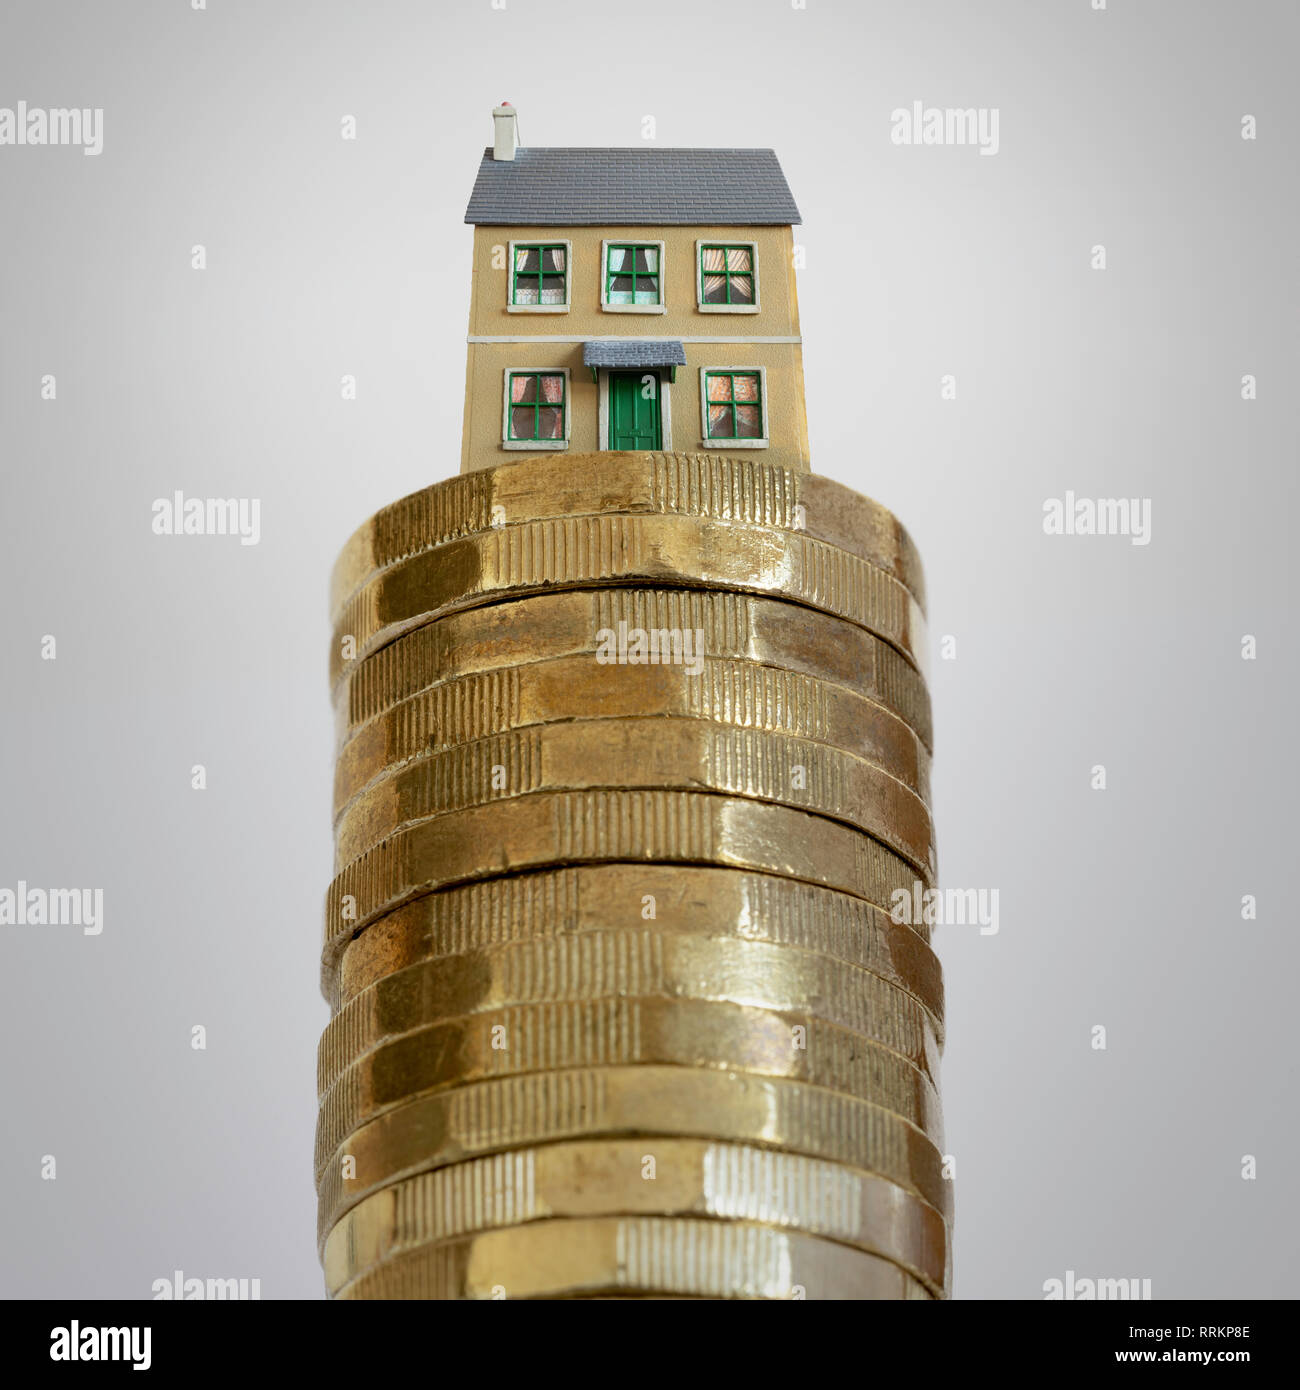 Housing property market stock image Stock Photo